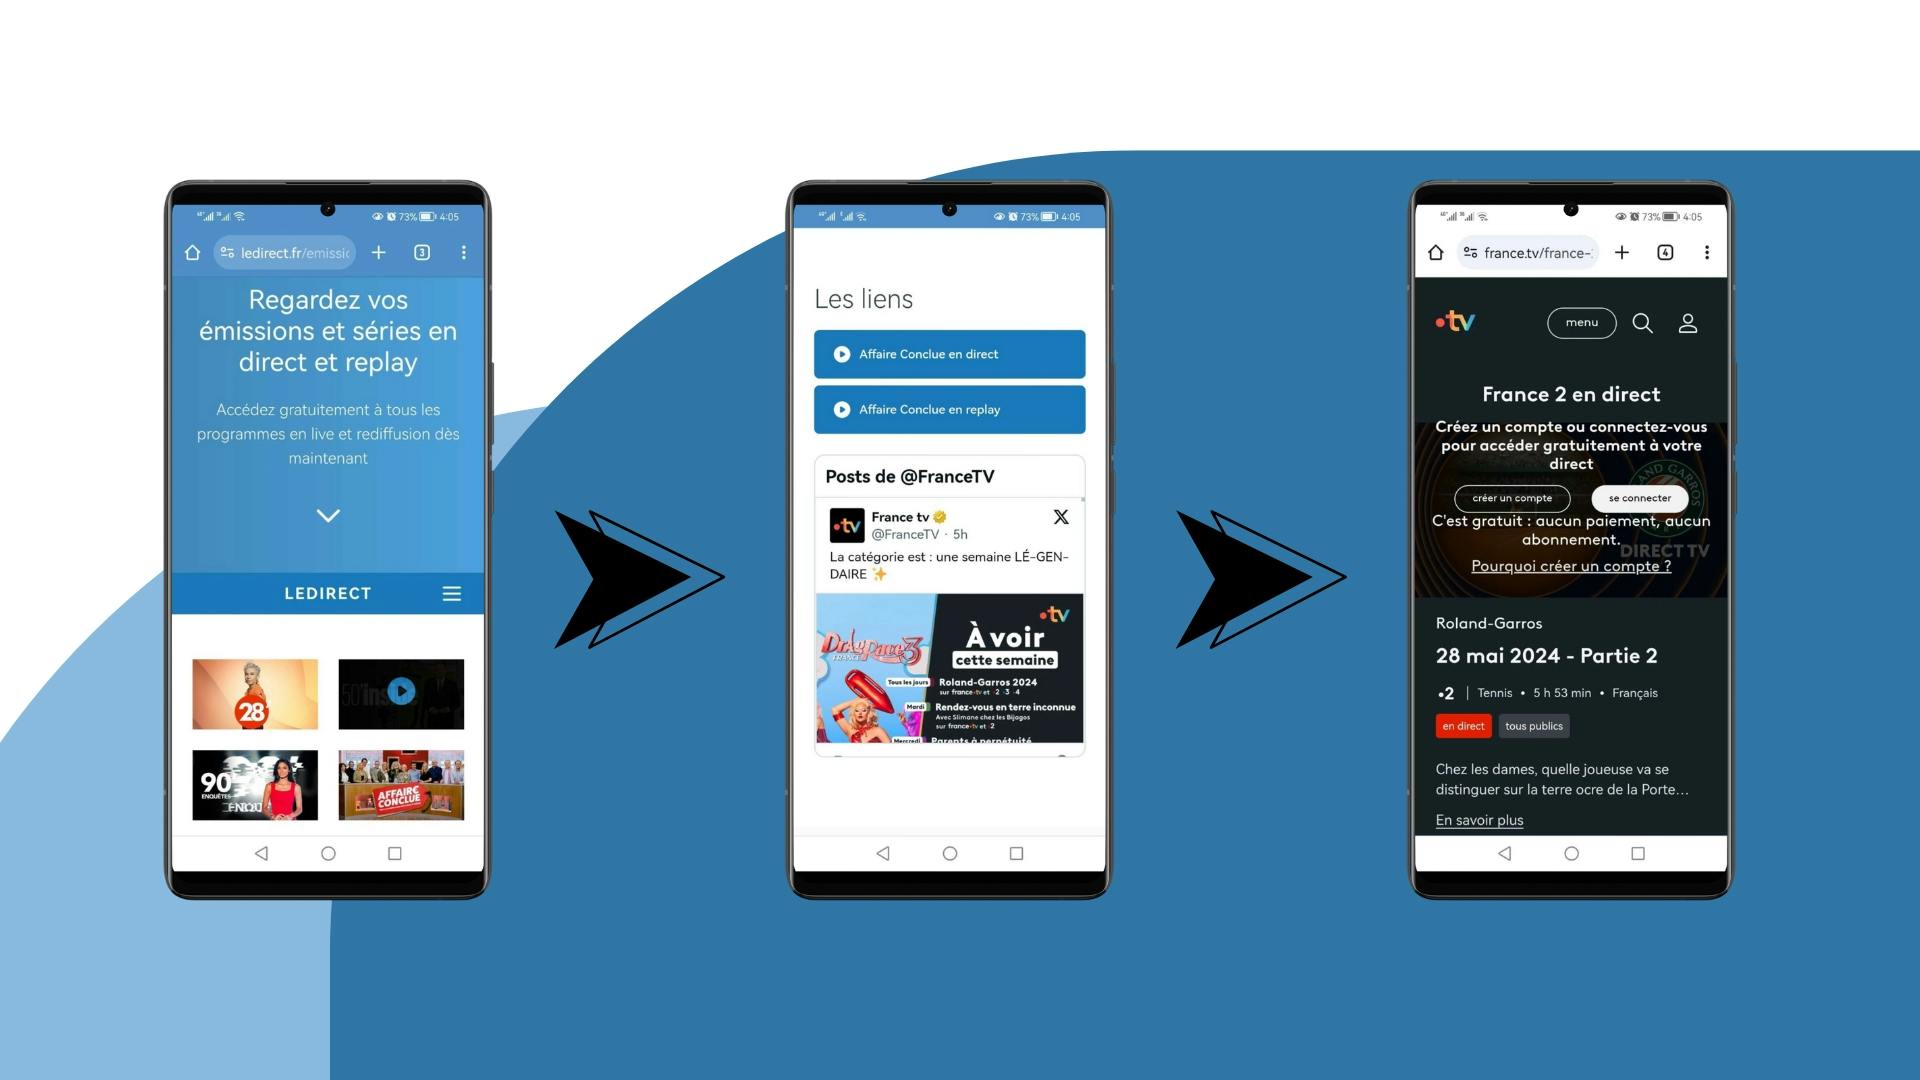 image avec trois écrans mobile Android montrant les étapes à suivre pour regarder les émissions et séries depuis le site LeDirect.fr